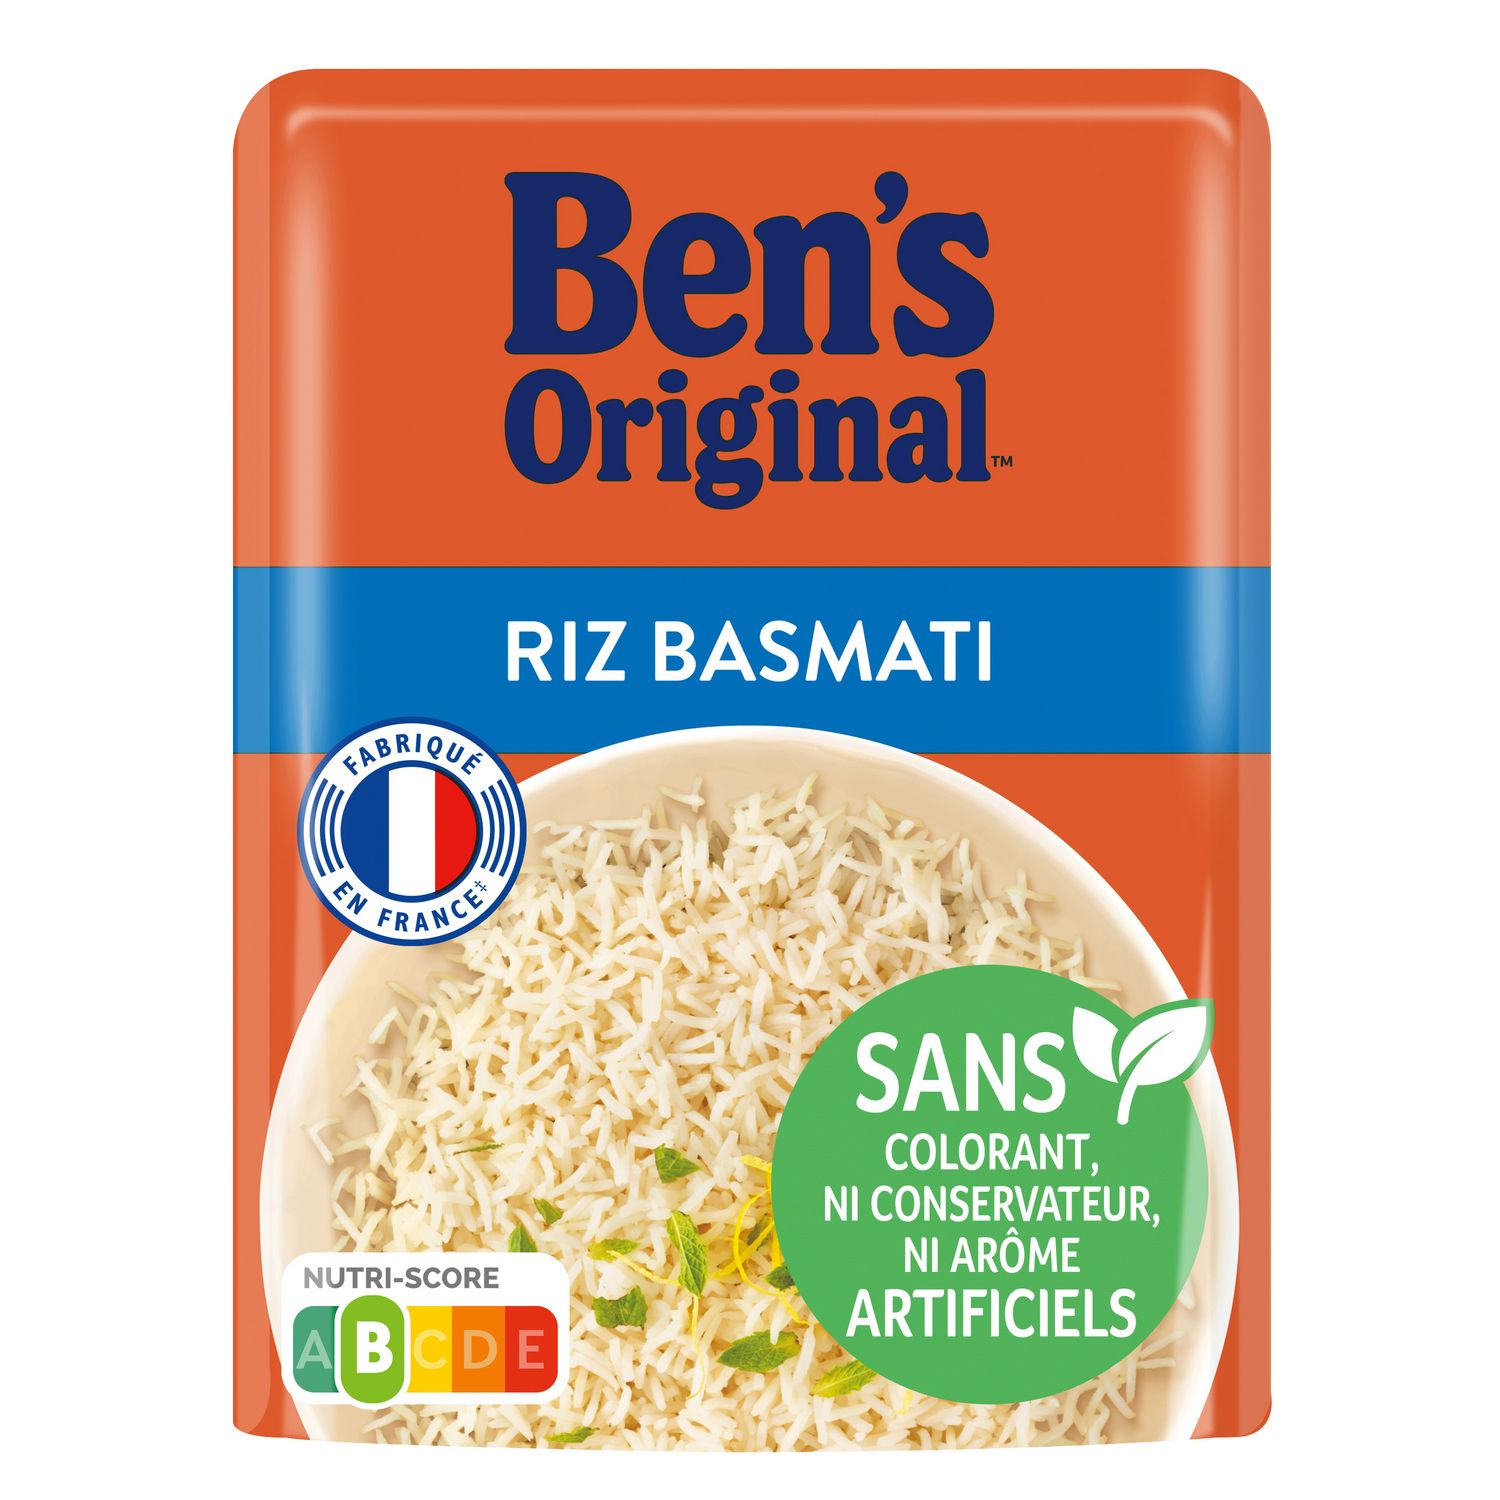 Livraison à domicile de riz Express Basmati de la marque Ben's